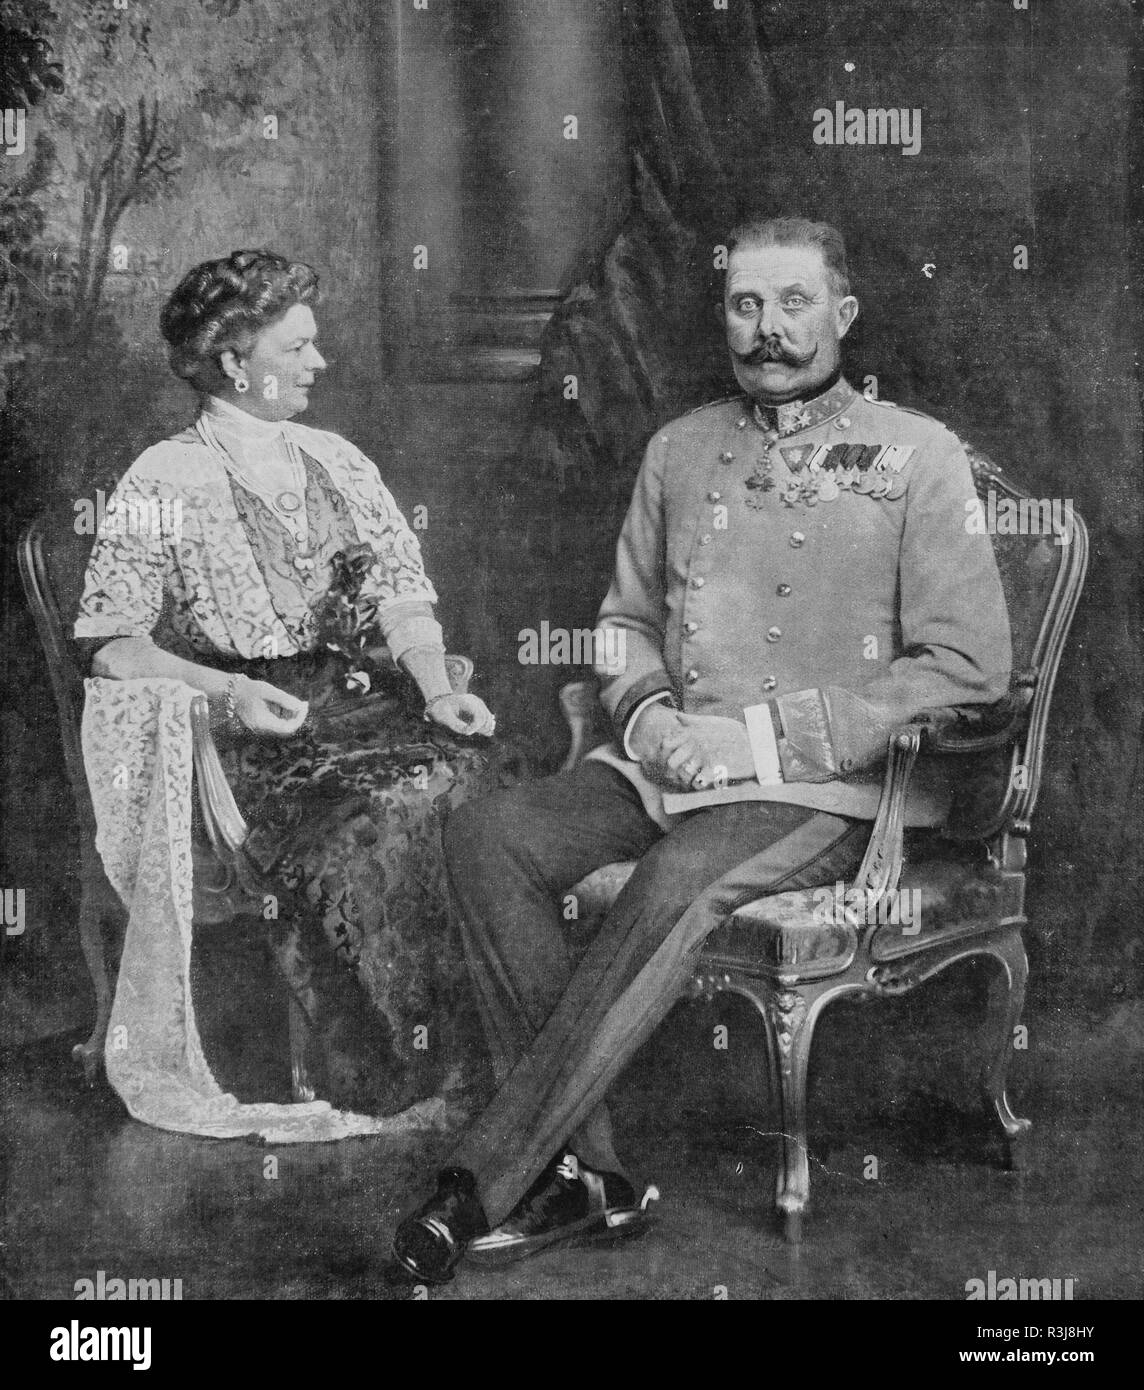 L'archiduc François-Ferdinand et la duchesse de Hohenberg avant leur assassinat à Sarajevo le 28 juin 1914 Banque D'Images